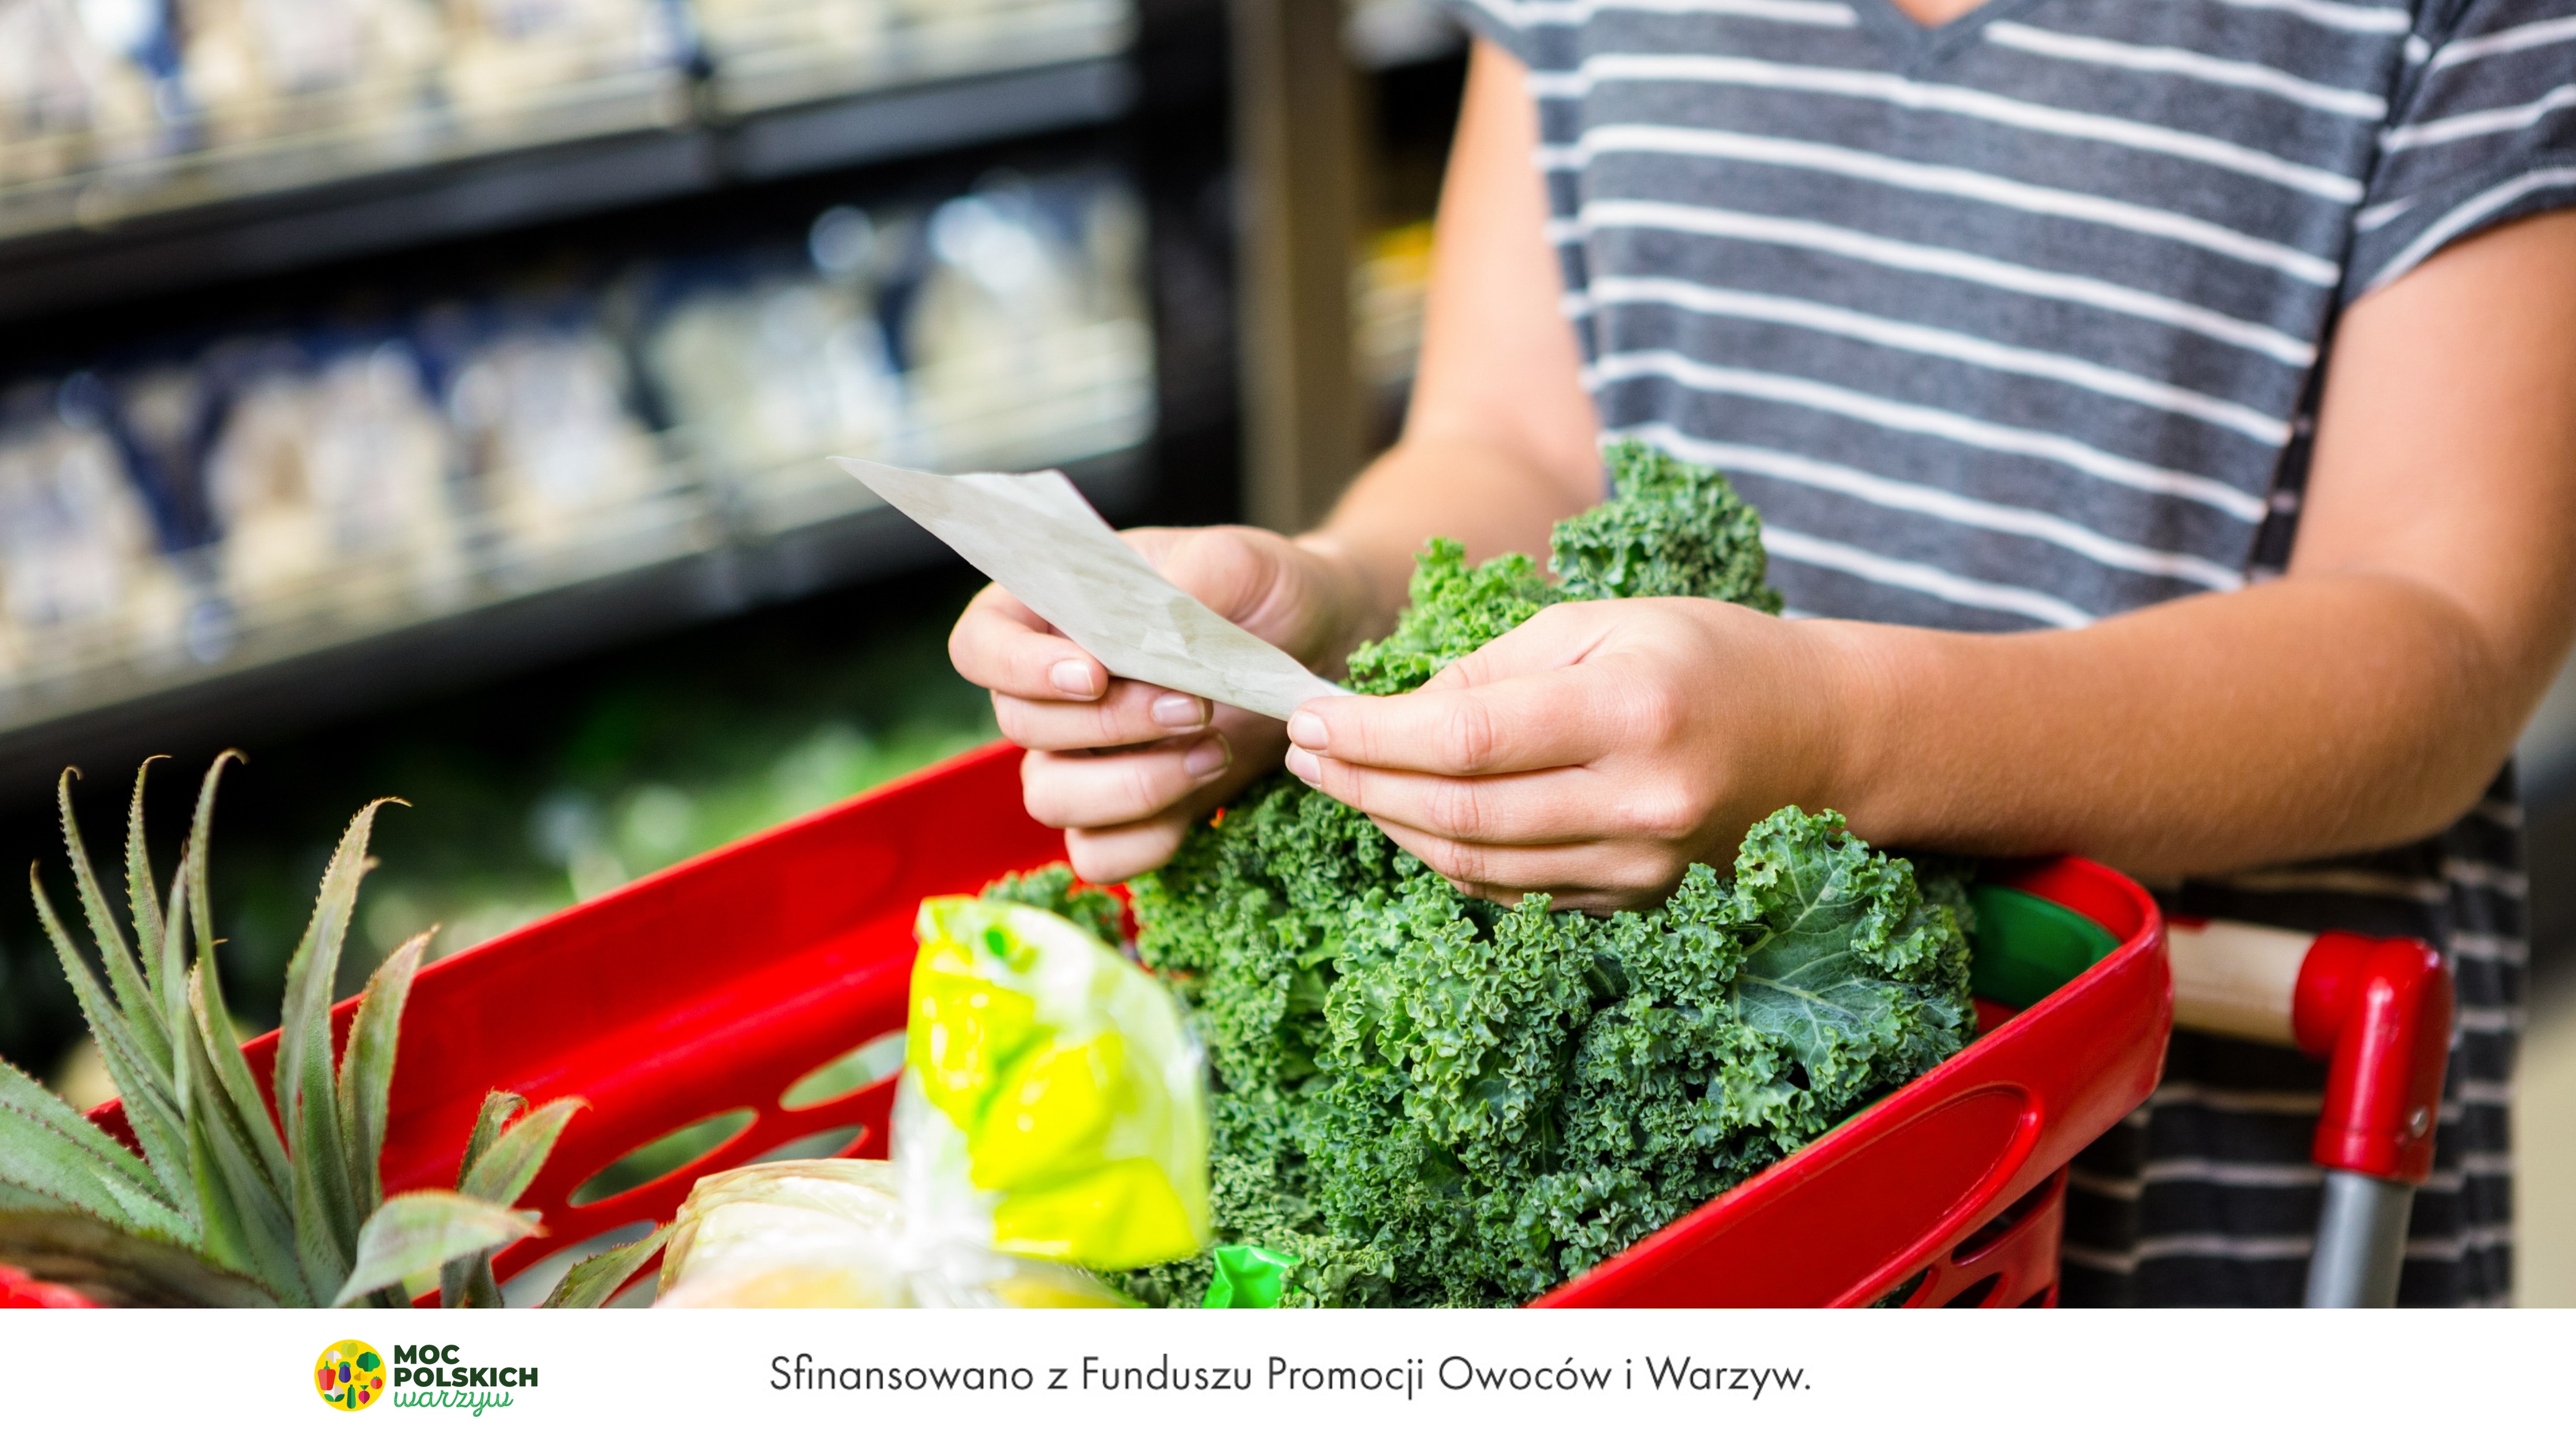 Przemyślane zakupy spożywcze sposobem na oszczędności w dobie inflacji | PAP MediaRoom portal.